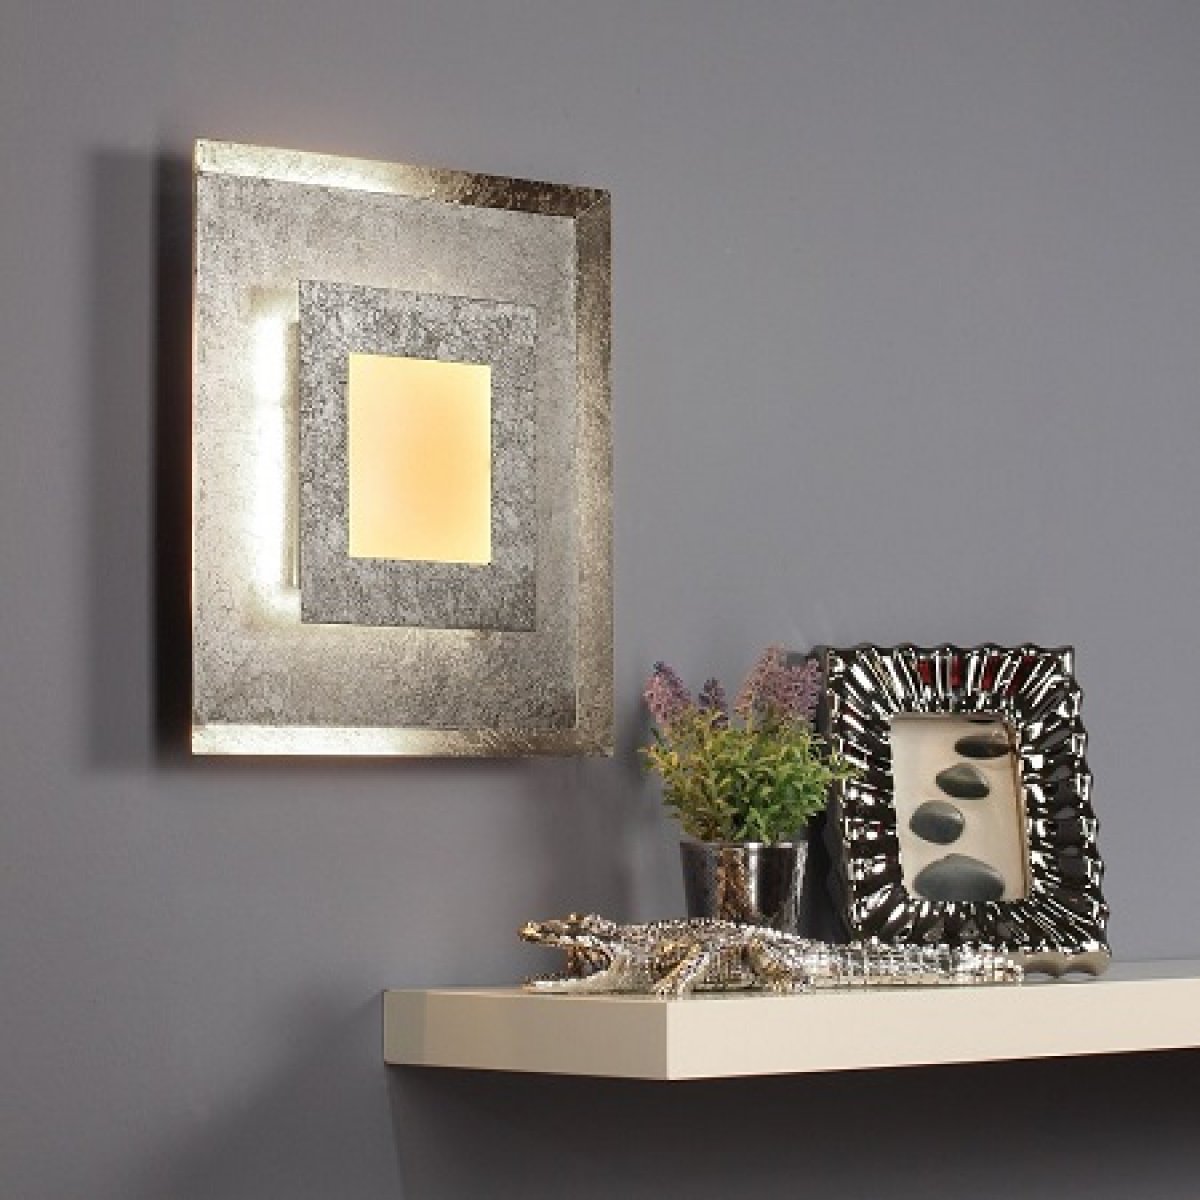 & Lampen Design ECO Deckenleuchte und kaufen Leuchten Window online silber LED M 1-flammig im Wand- Luce Light 9021 -->